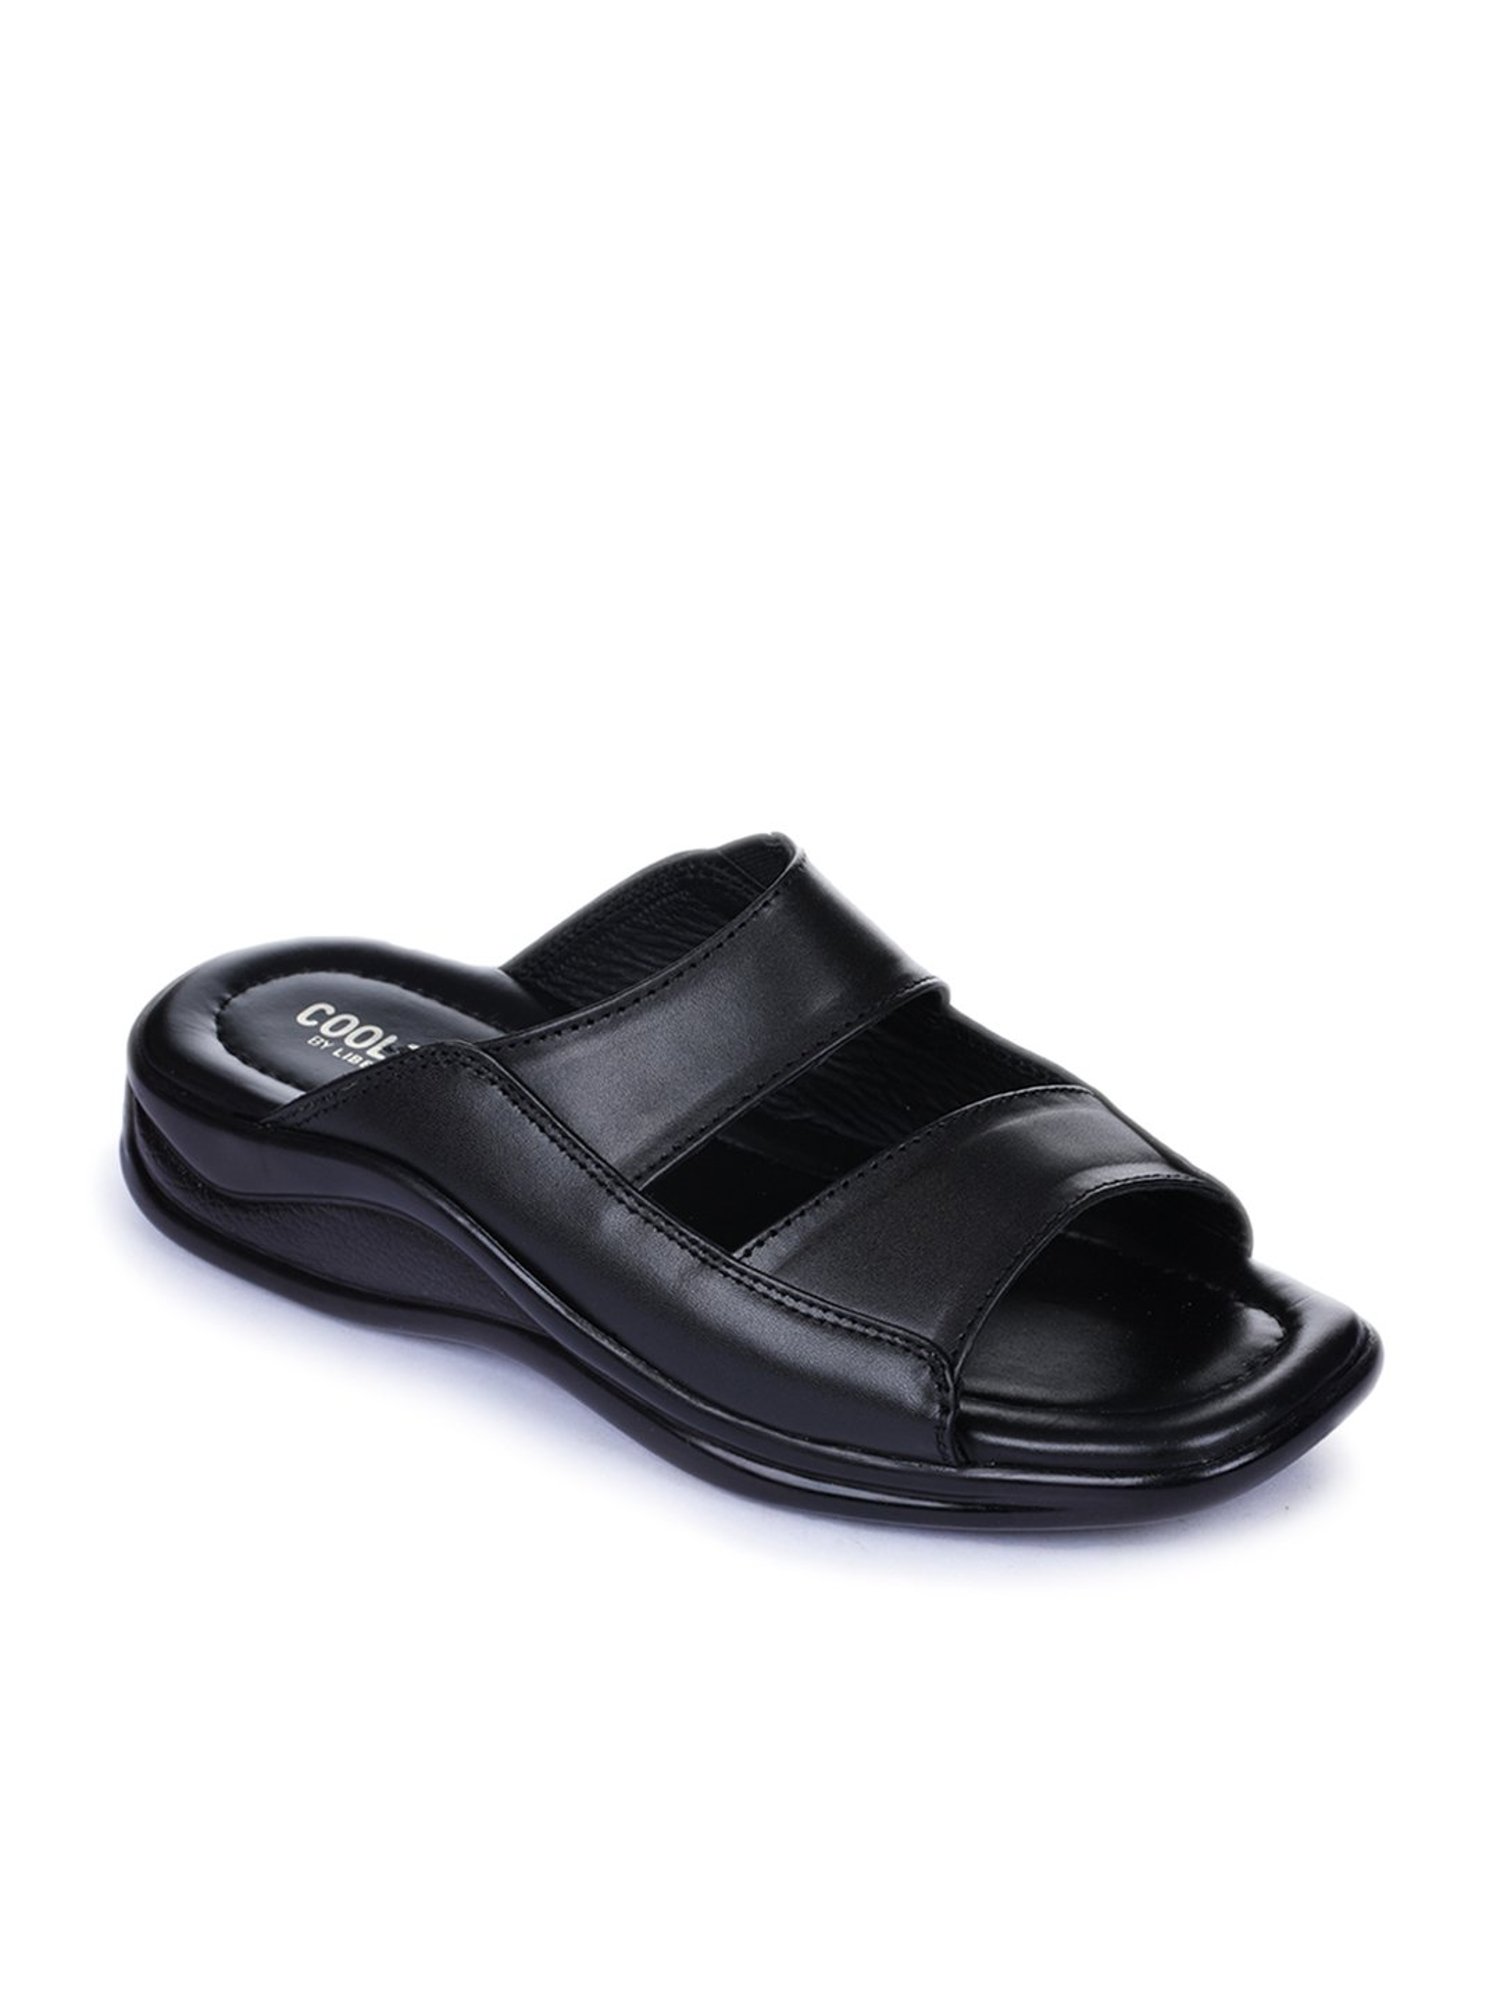 Sandals Gucci Black size 39 EU in Suede - 38812427